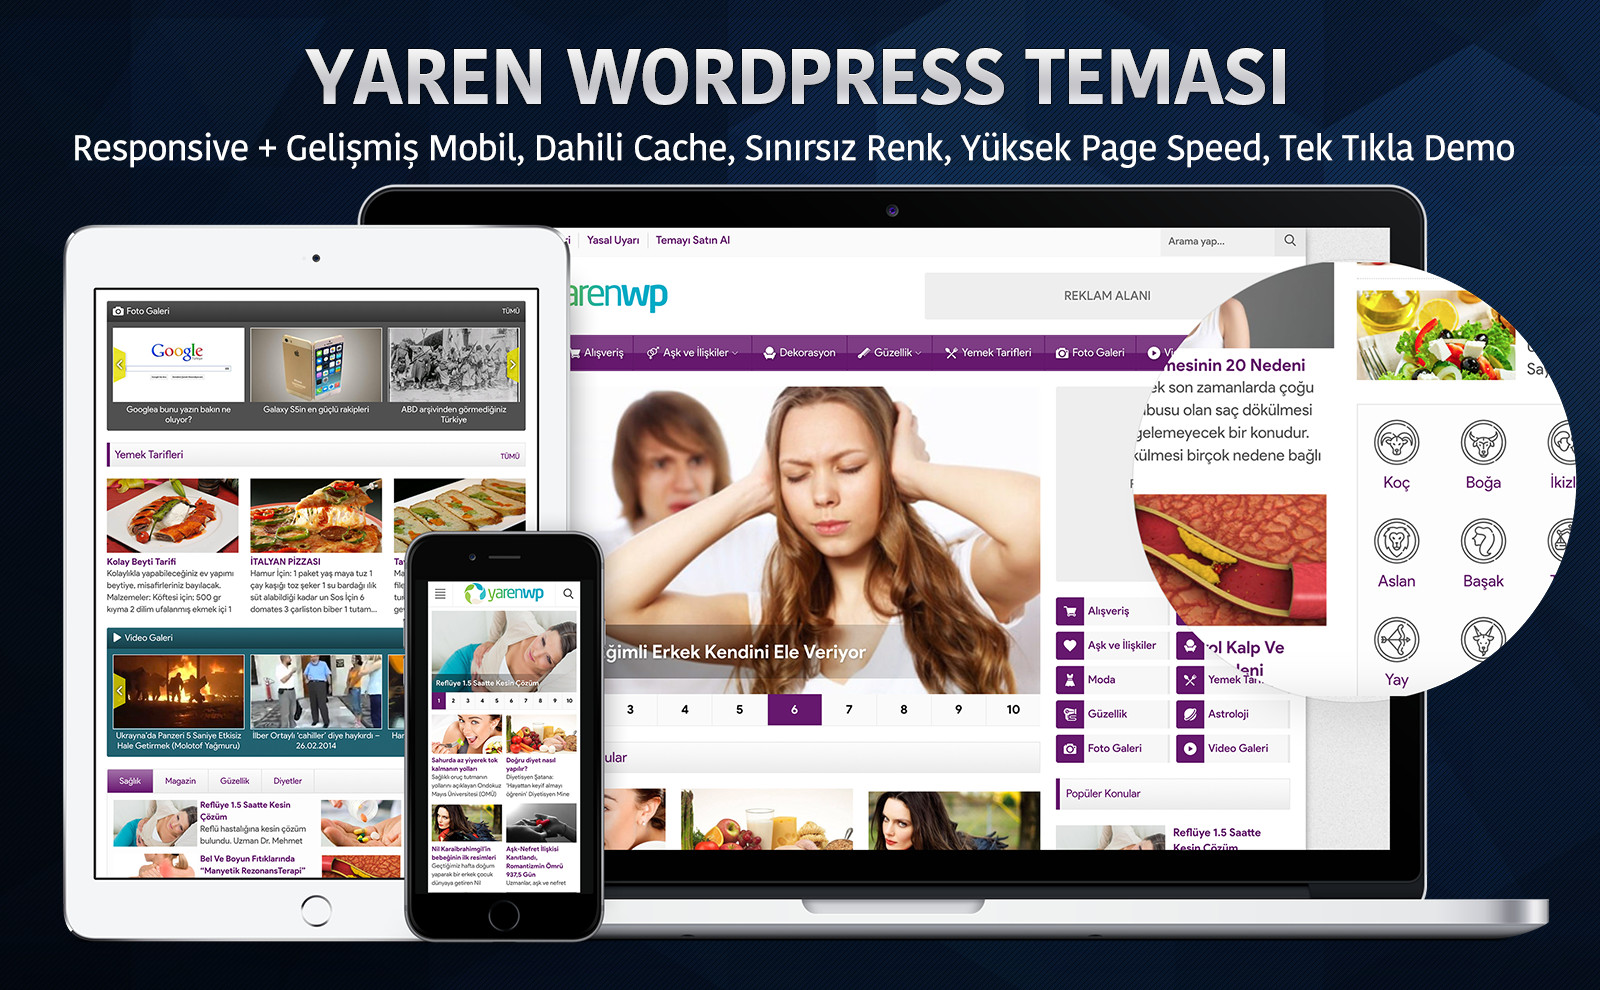 Yaren WordPress Teması